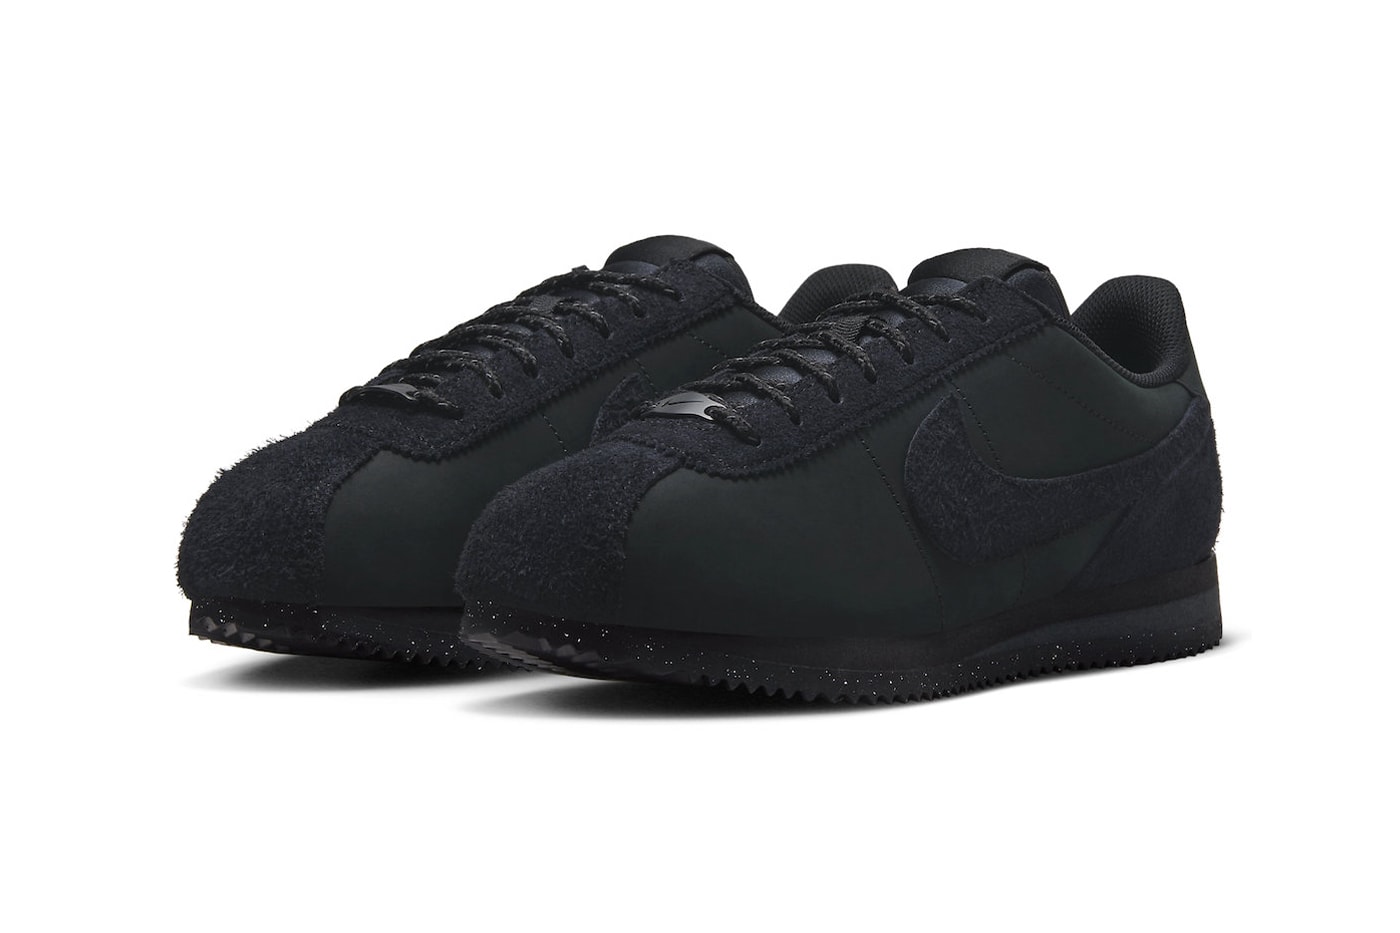 ナイキコルテッツからオールブラック仕様の新色が登場 Nike Cortez PRM Surfaces in "Triple Black" and Shaggy Suede Details release info premium